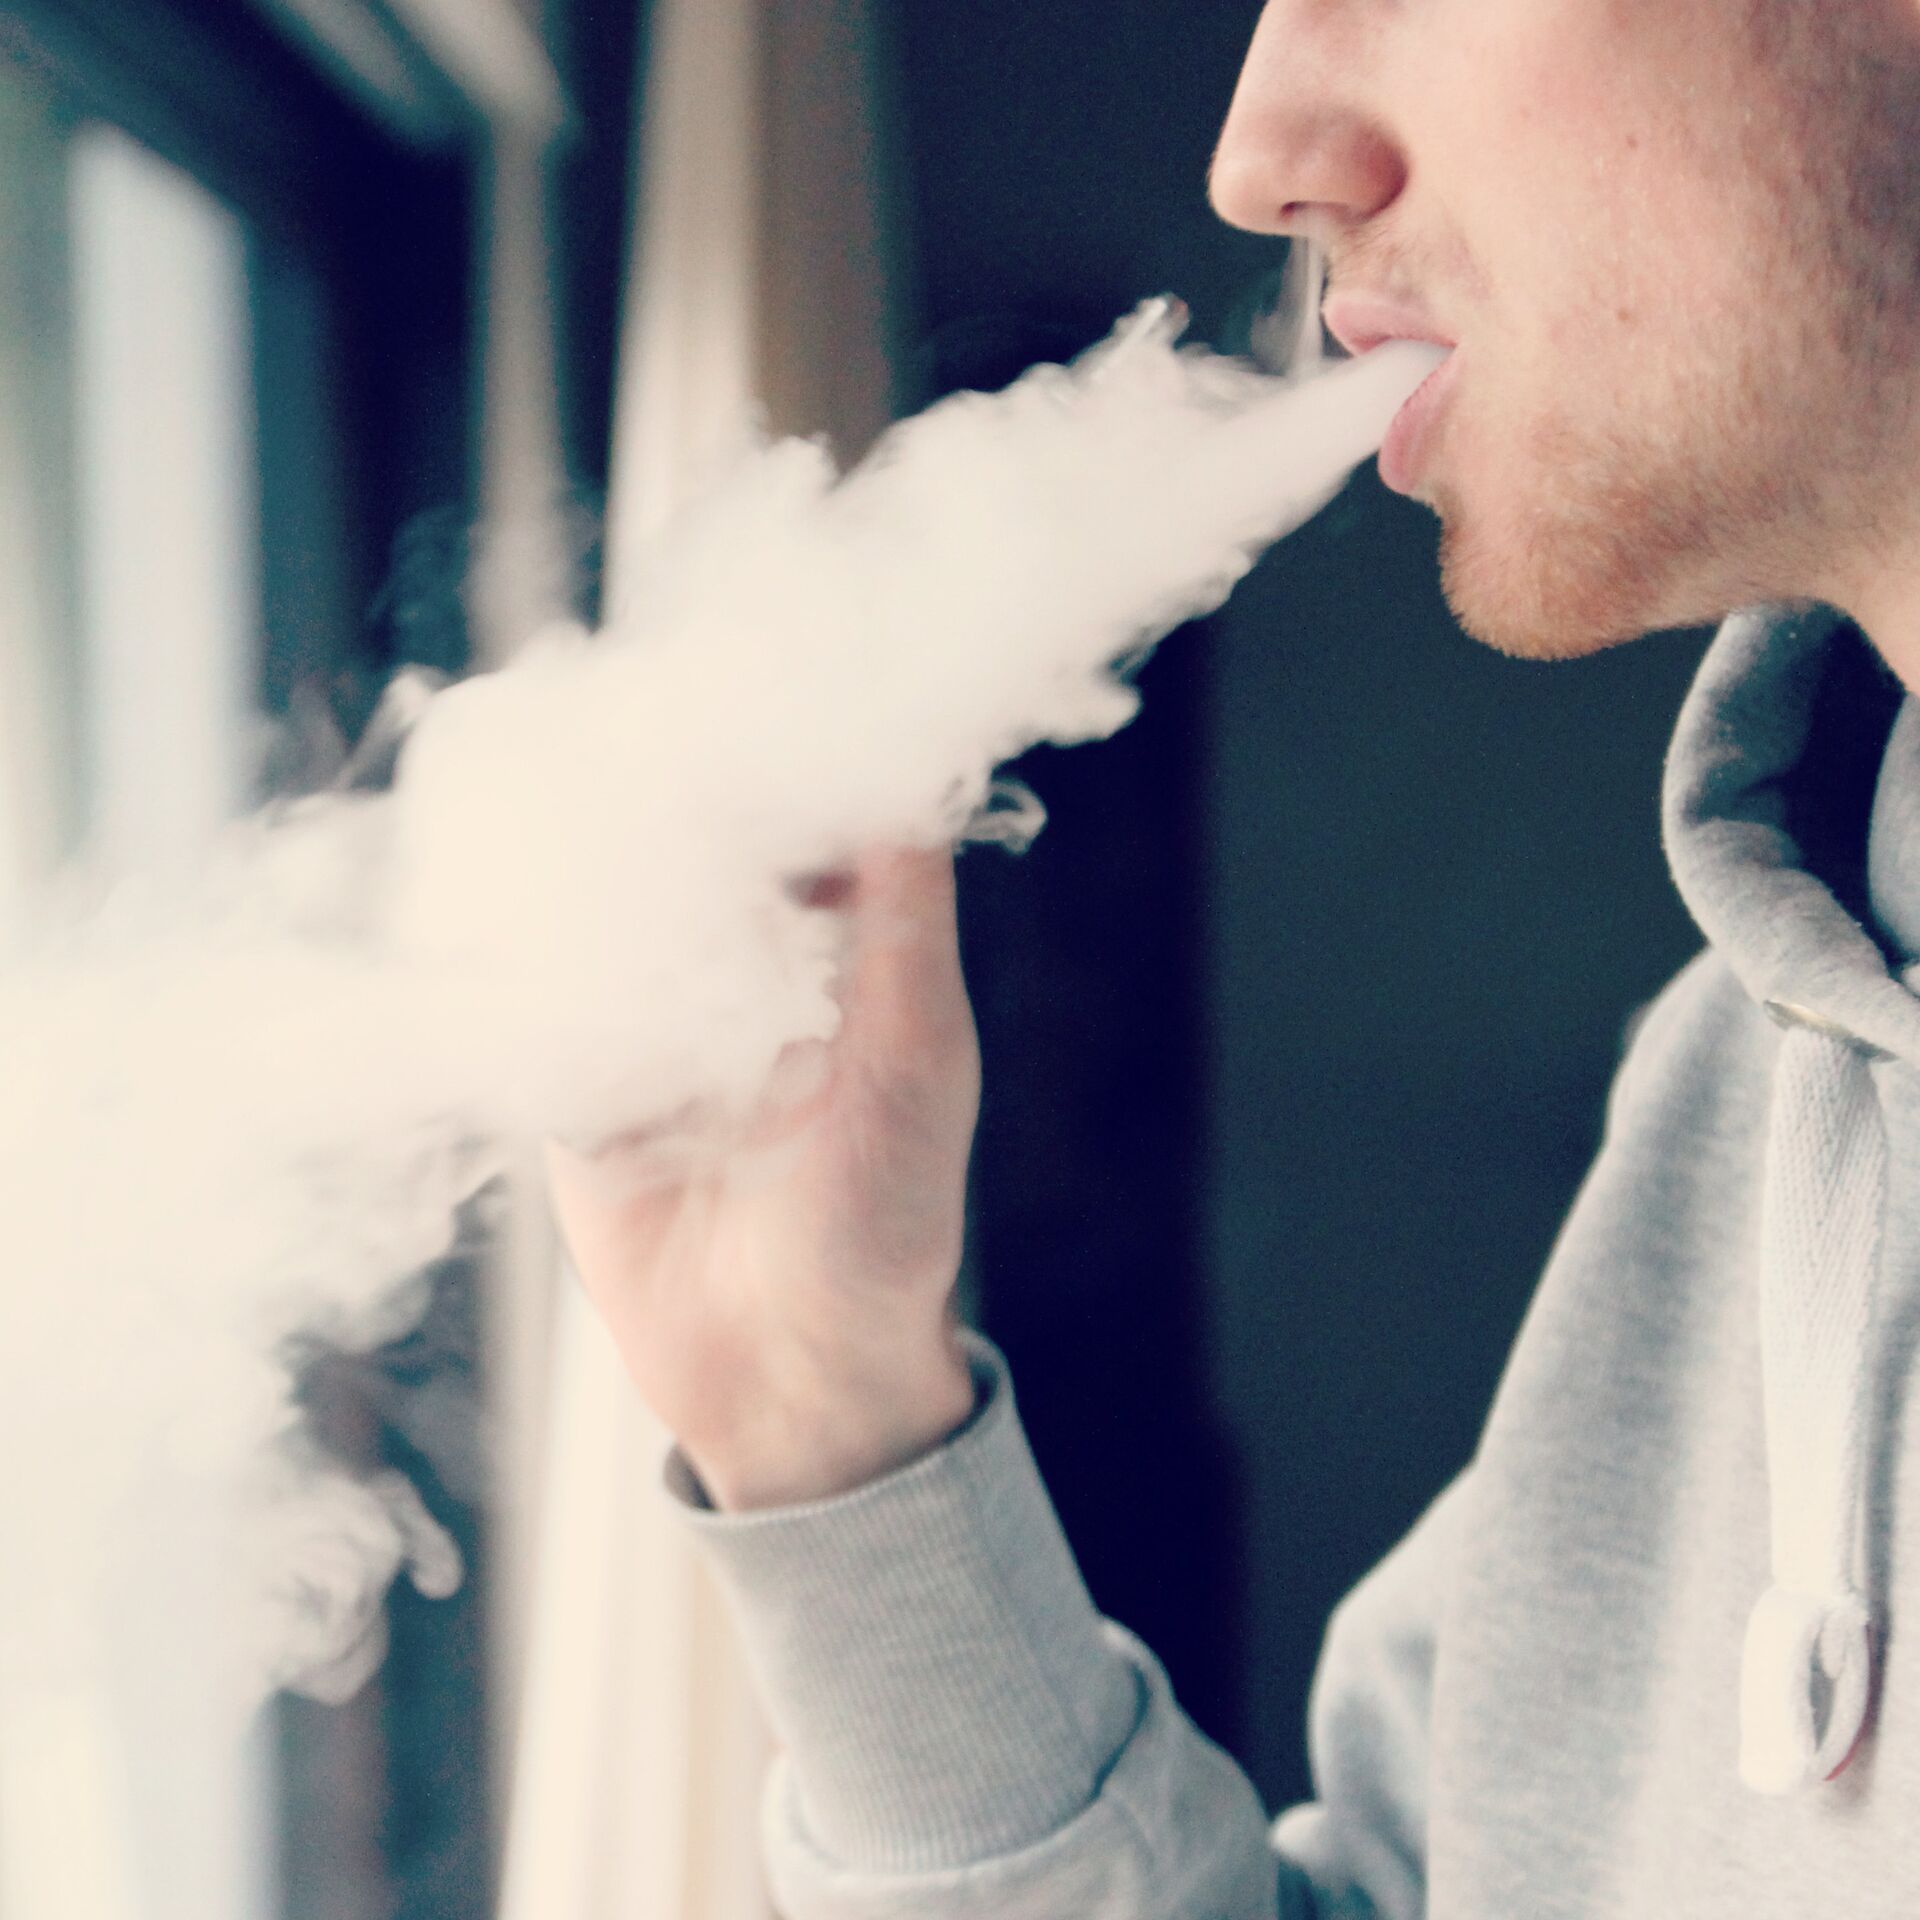 Cigarrillo electrónico causaría mal pulmonar